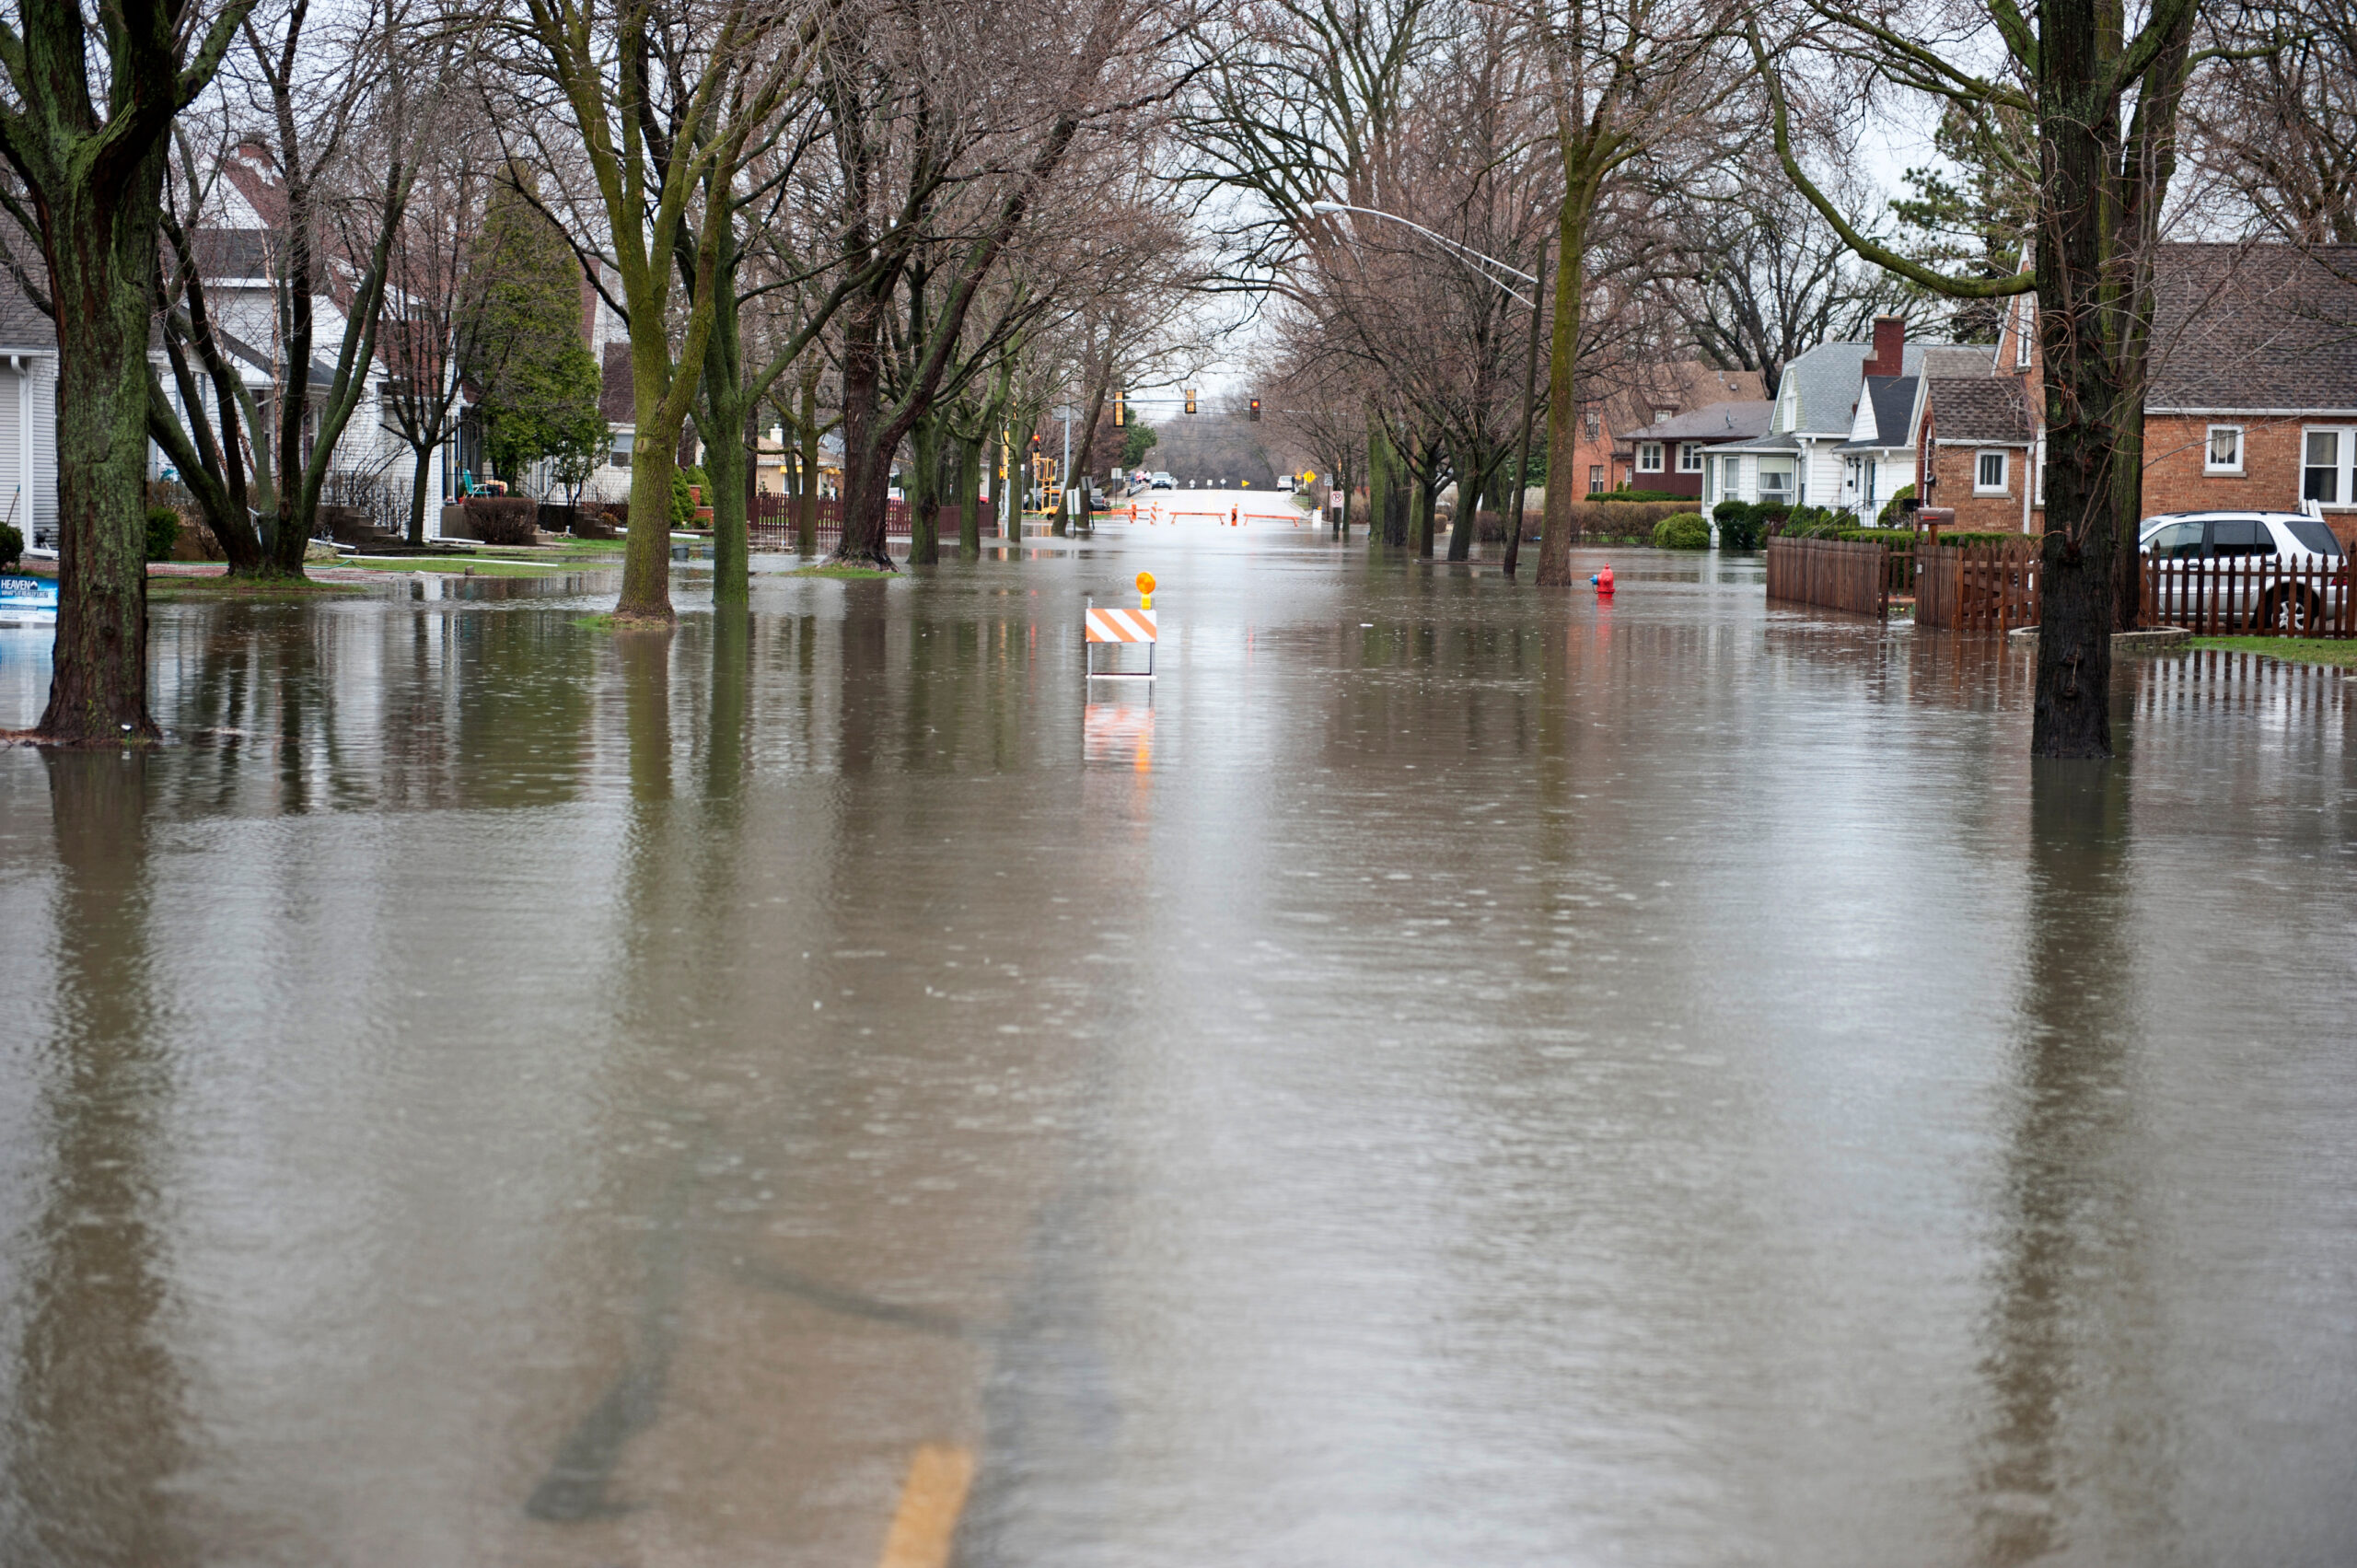 A neighbourhood street that has been flooded.